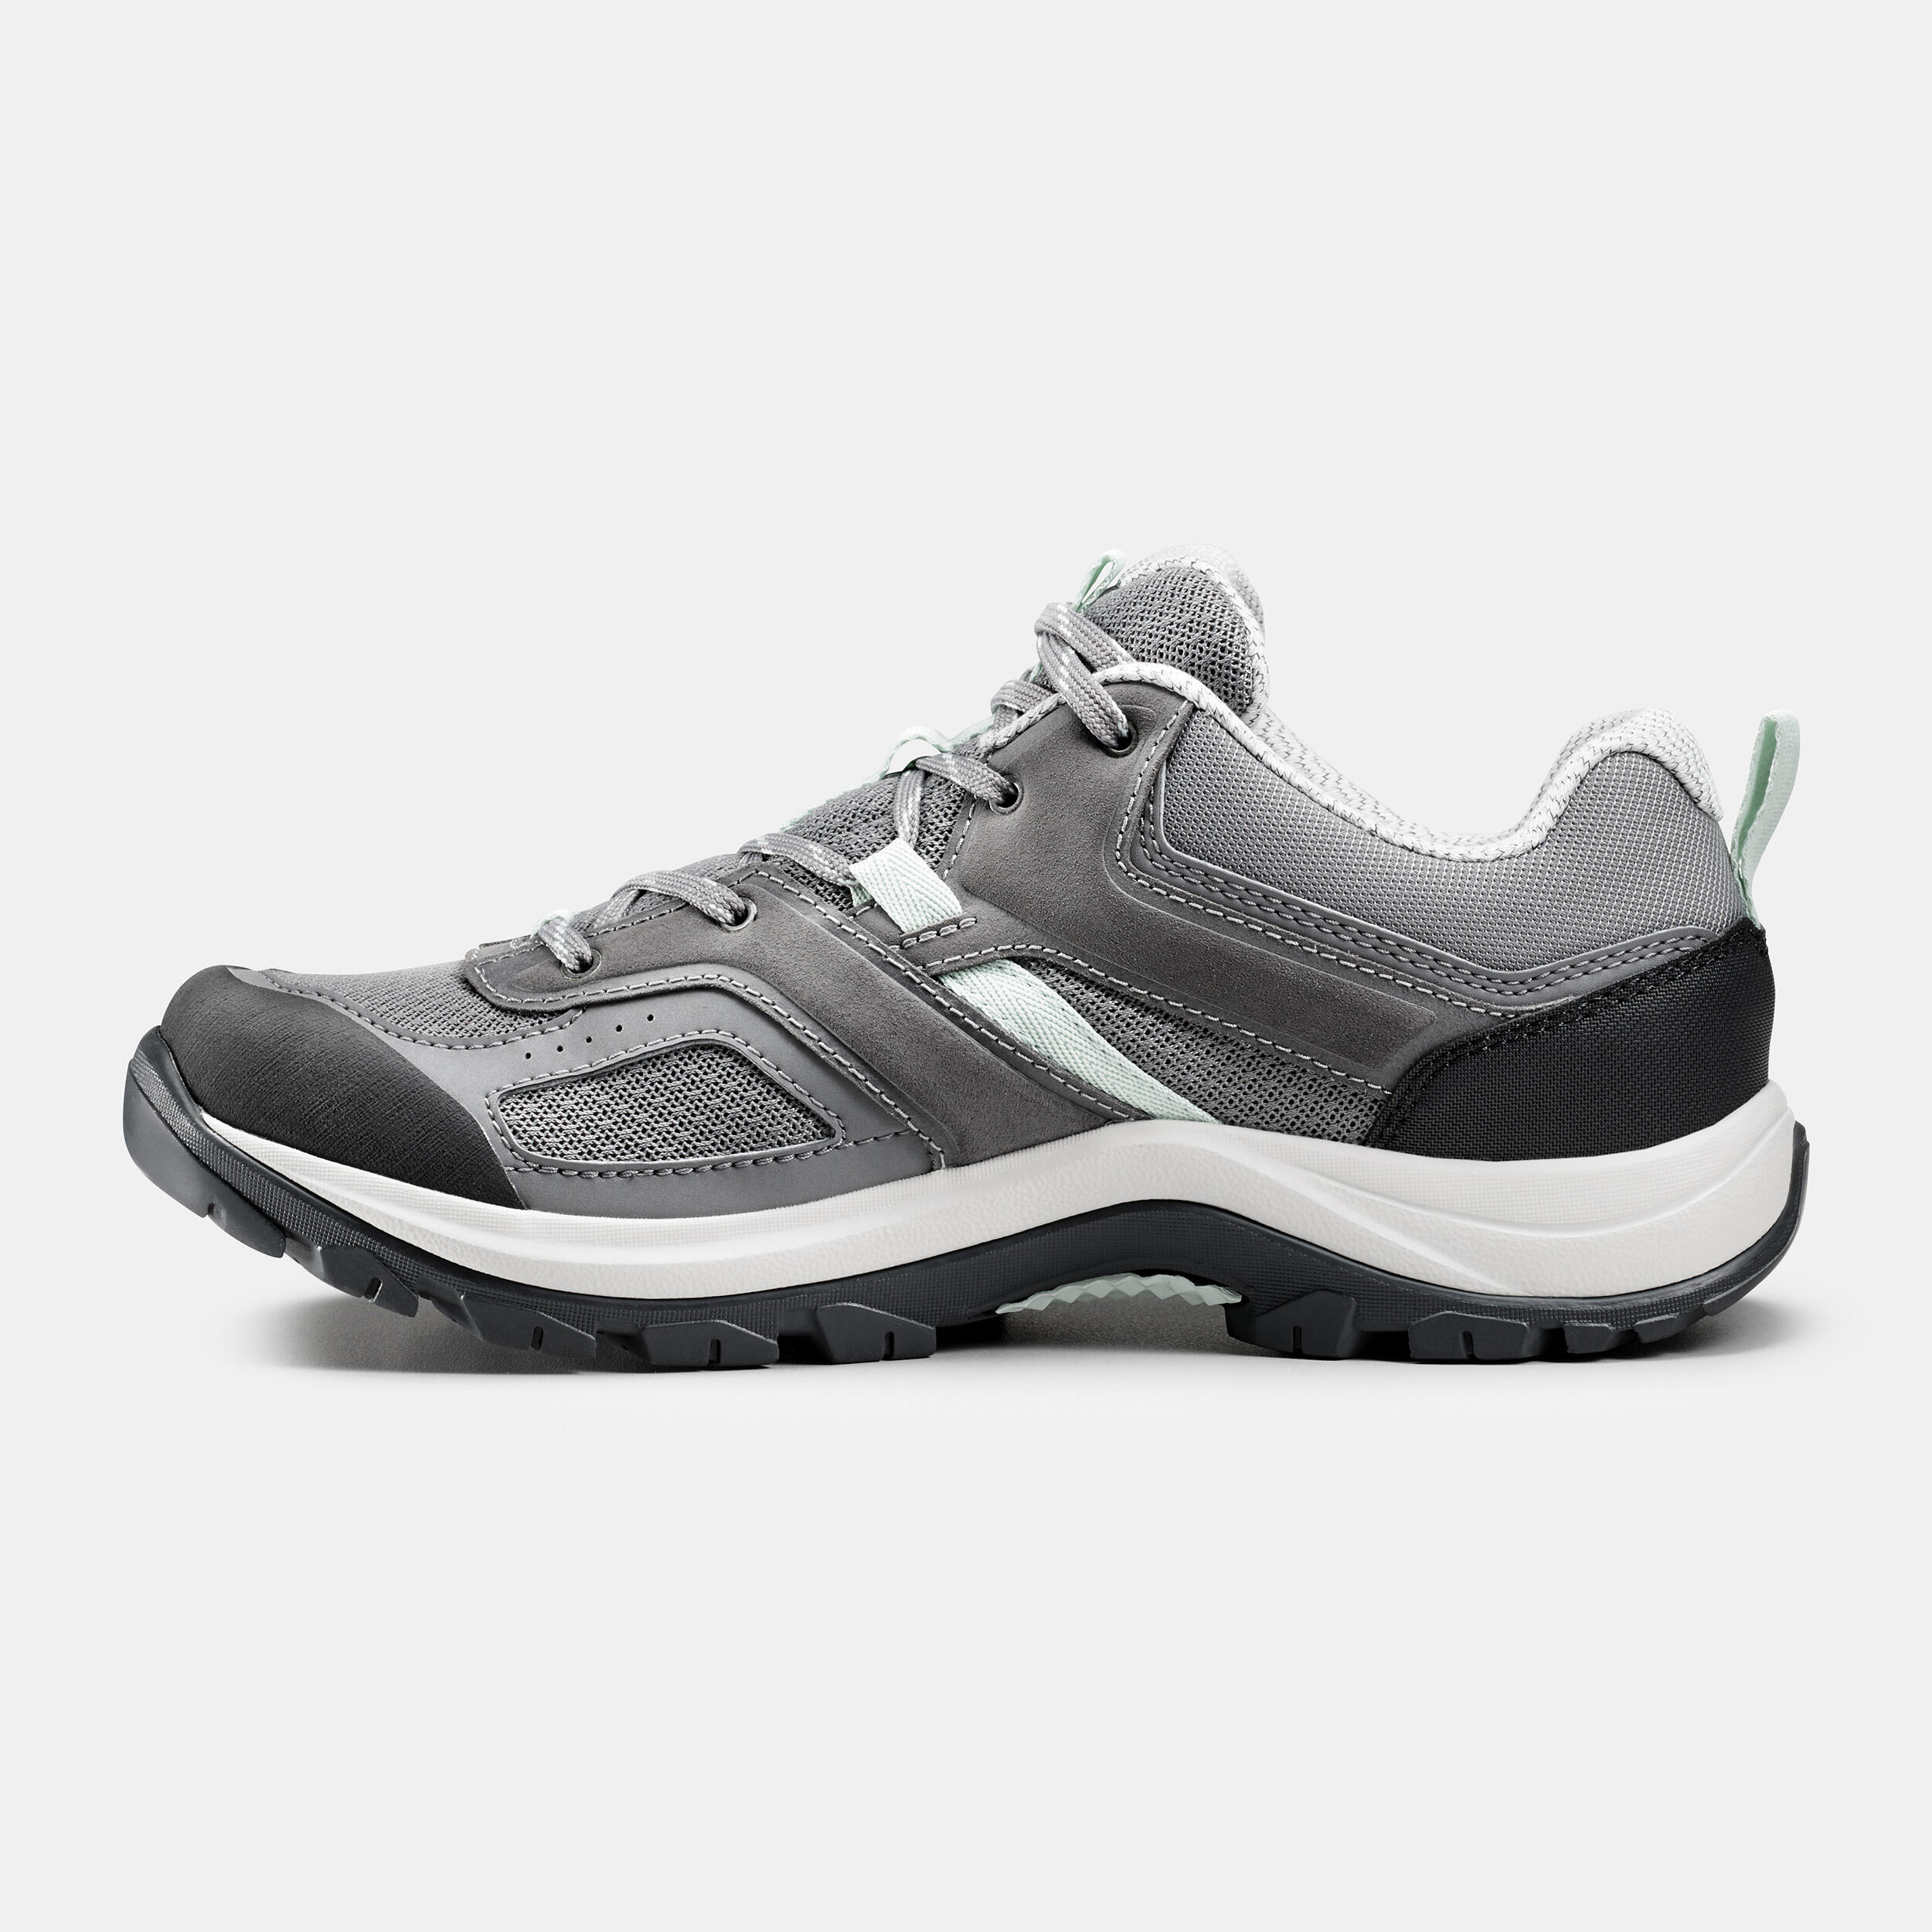 Women’s Hiking Shoes - MH 100 Grey - QUECHUA